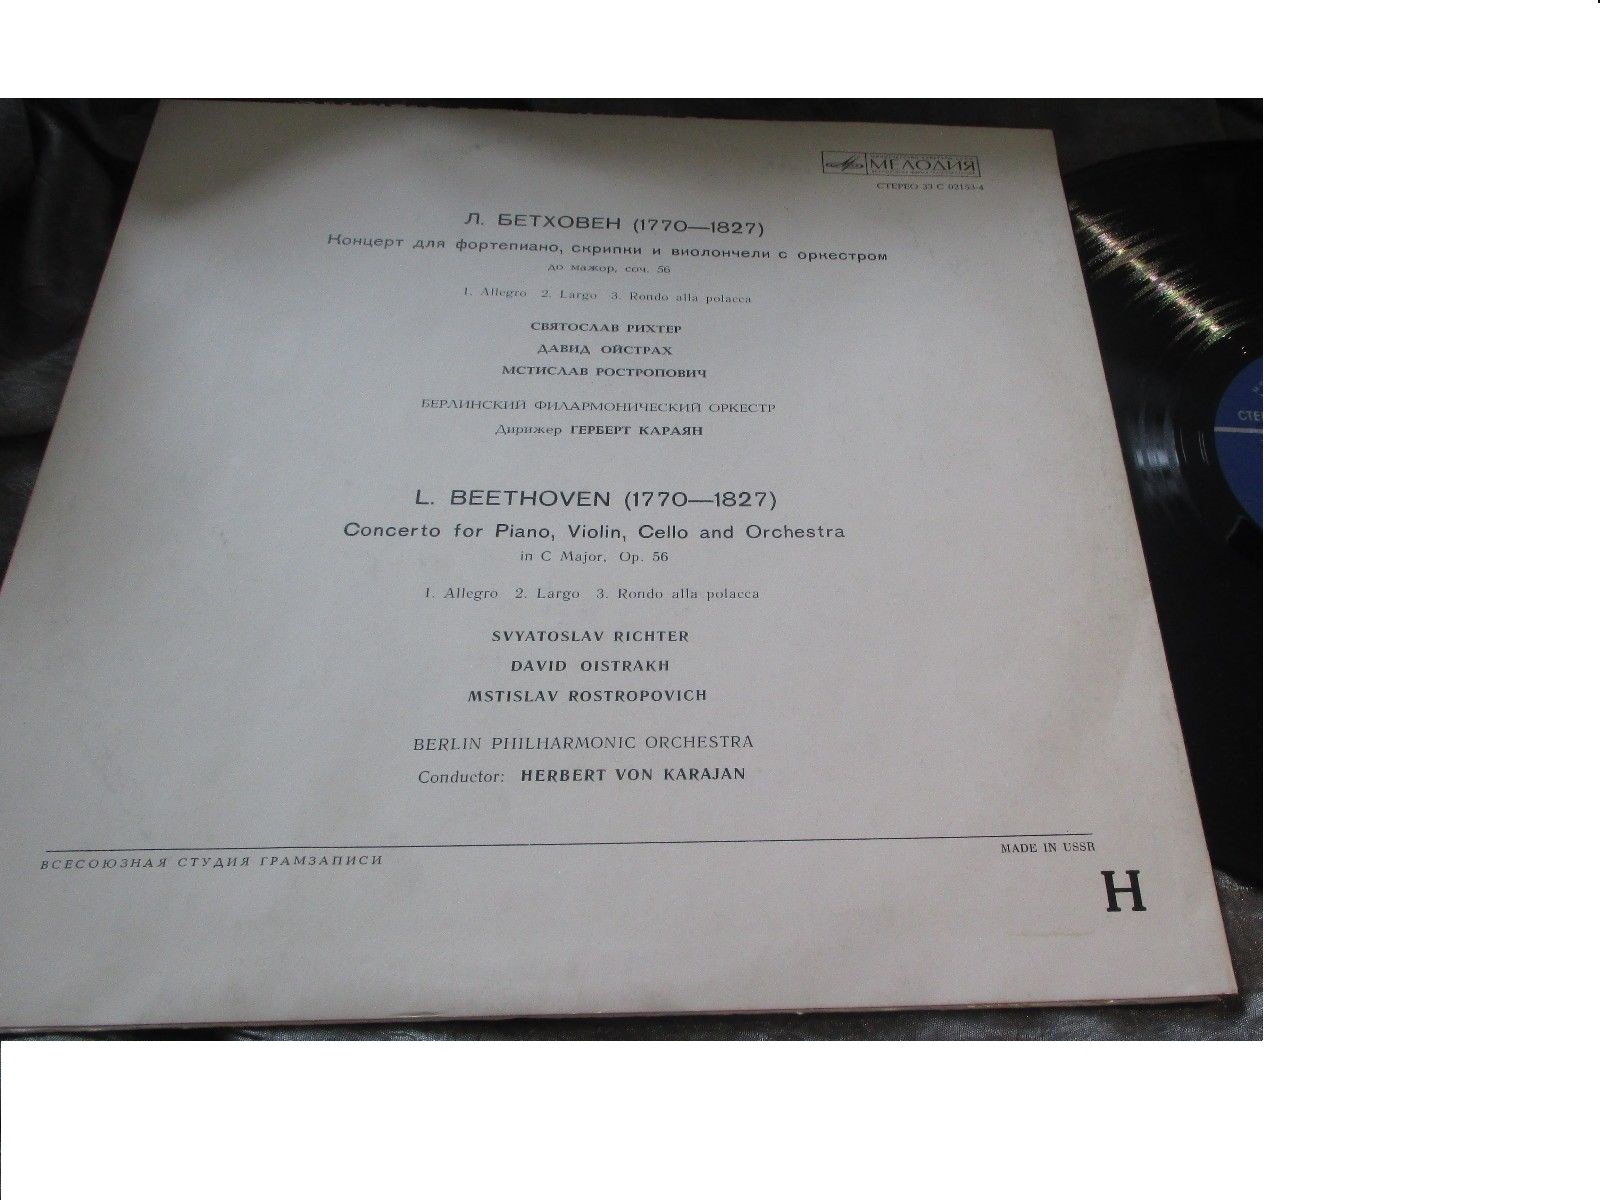 Л. БЕТХОВЕН (1770–1827): Концерт для ф-но, скрипки и виолончели с оркестром (Г. Караян, С. Рихтер, Д. Ойстрах, М. Ростропович)